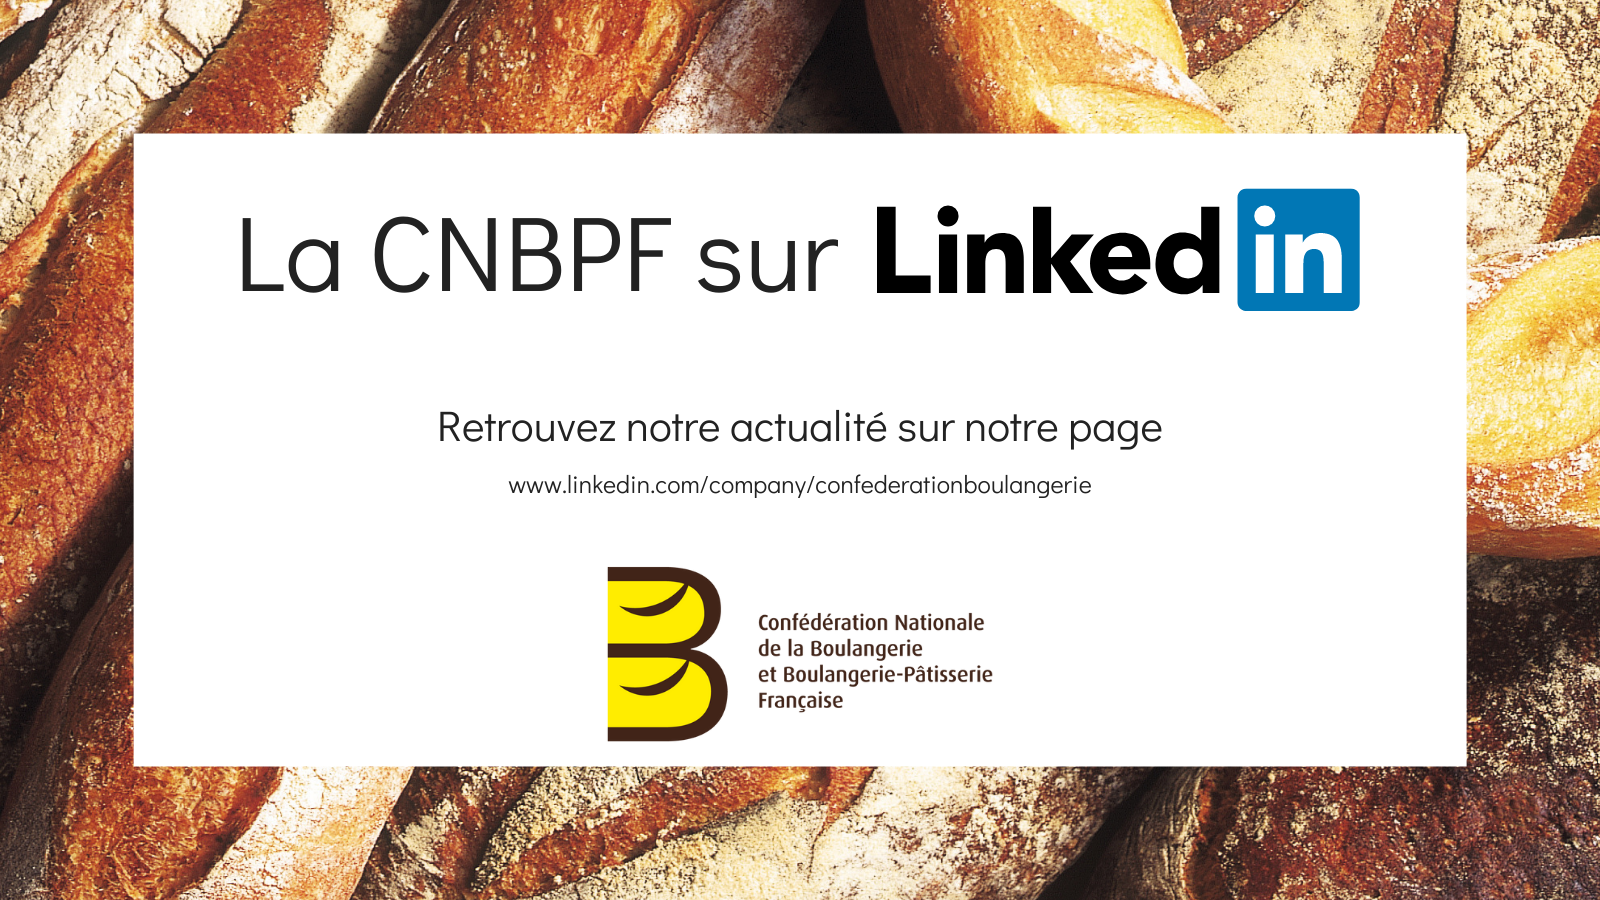 Ouverture de la Page LinkedIn de la CNBPF